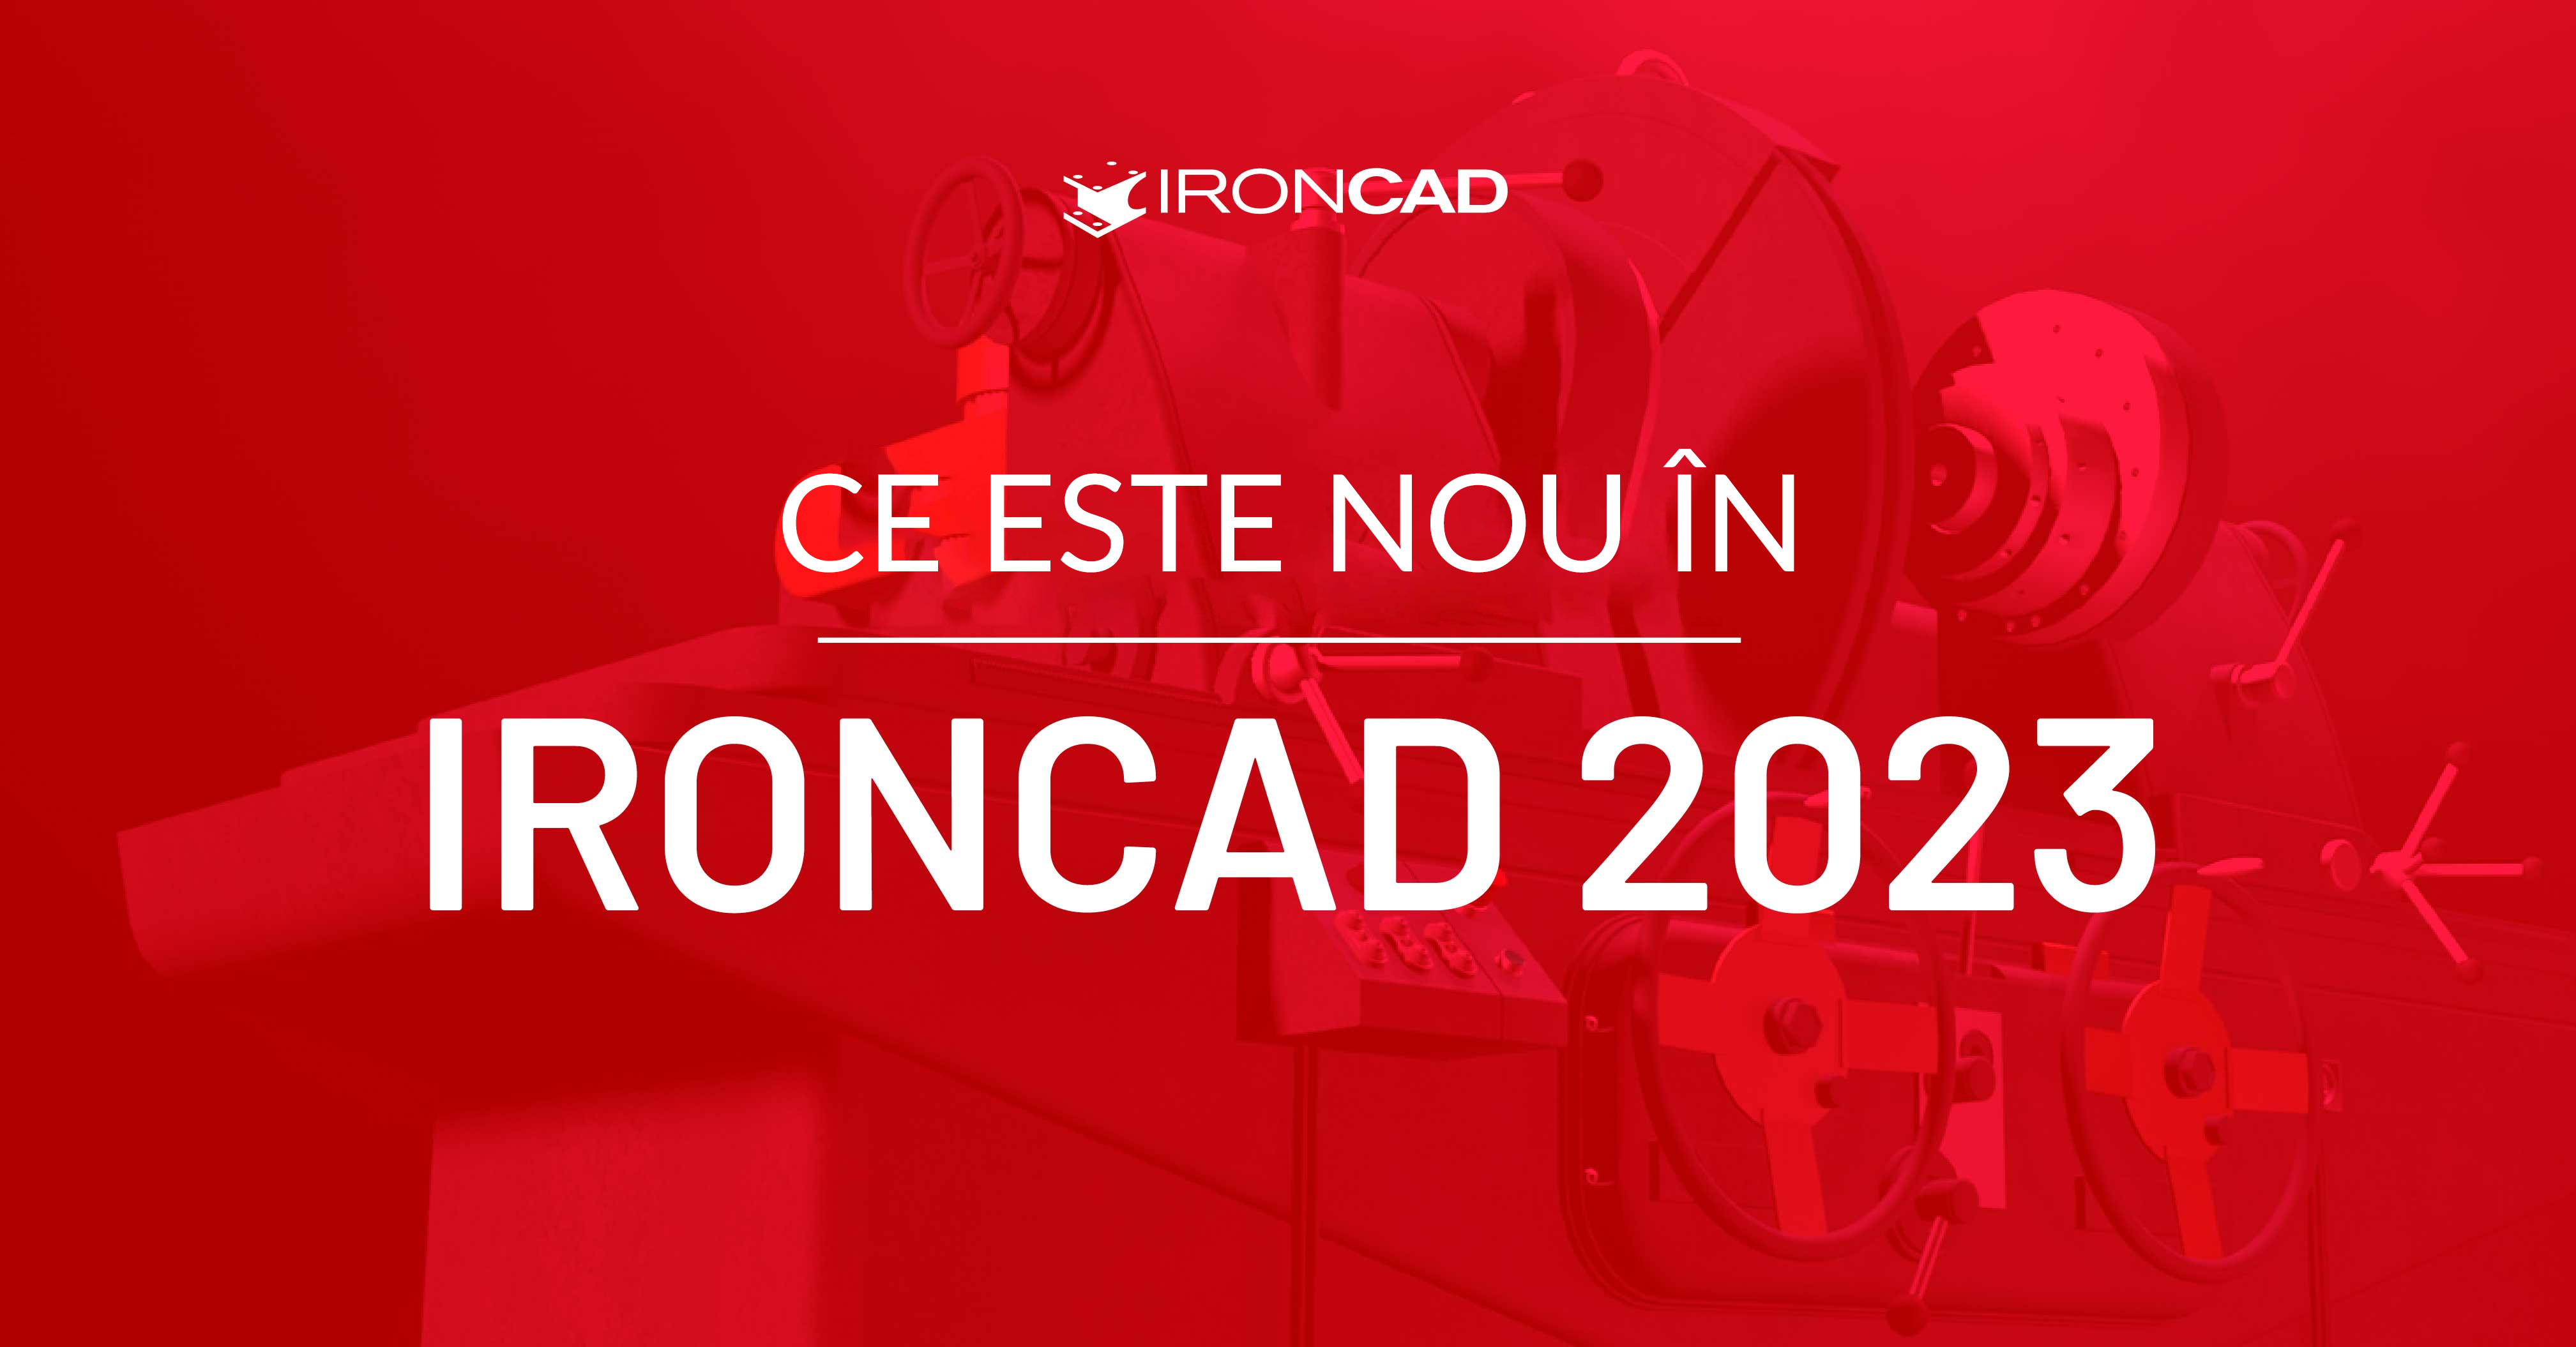 Ce este nou în IronCAD 2023?